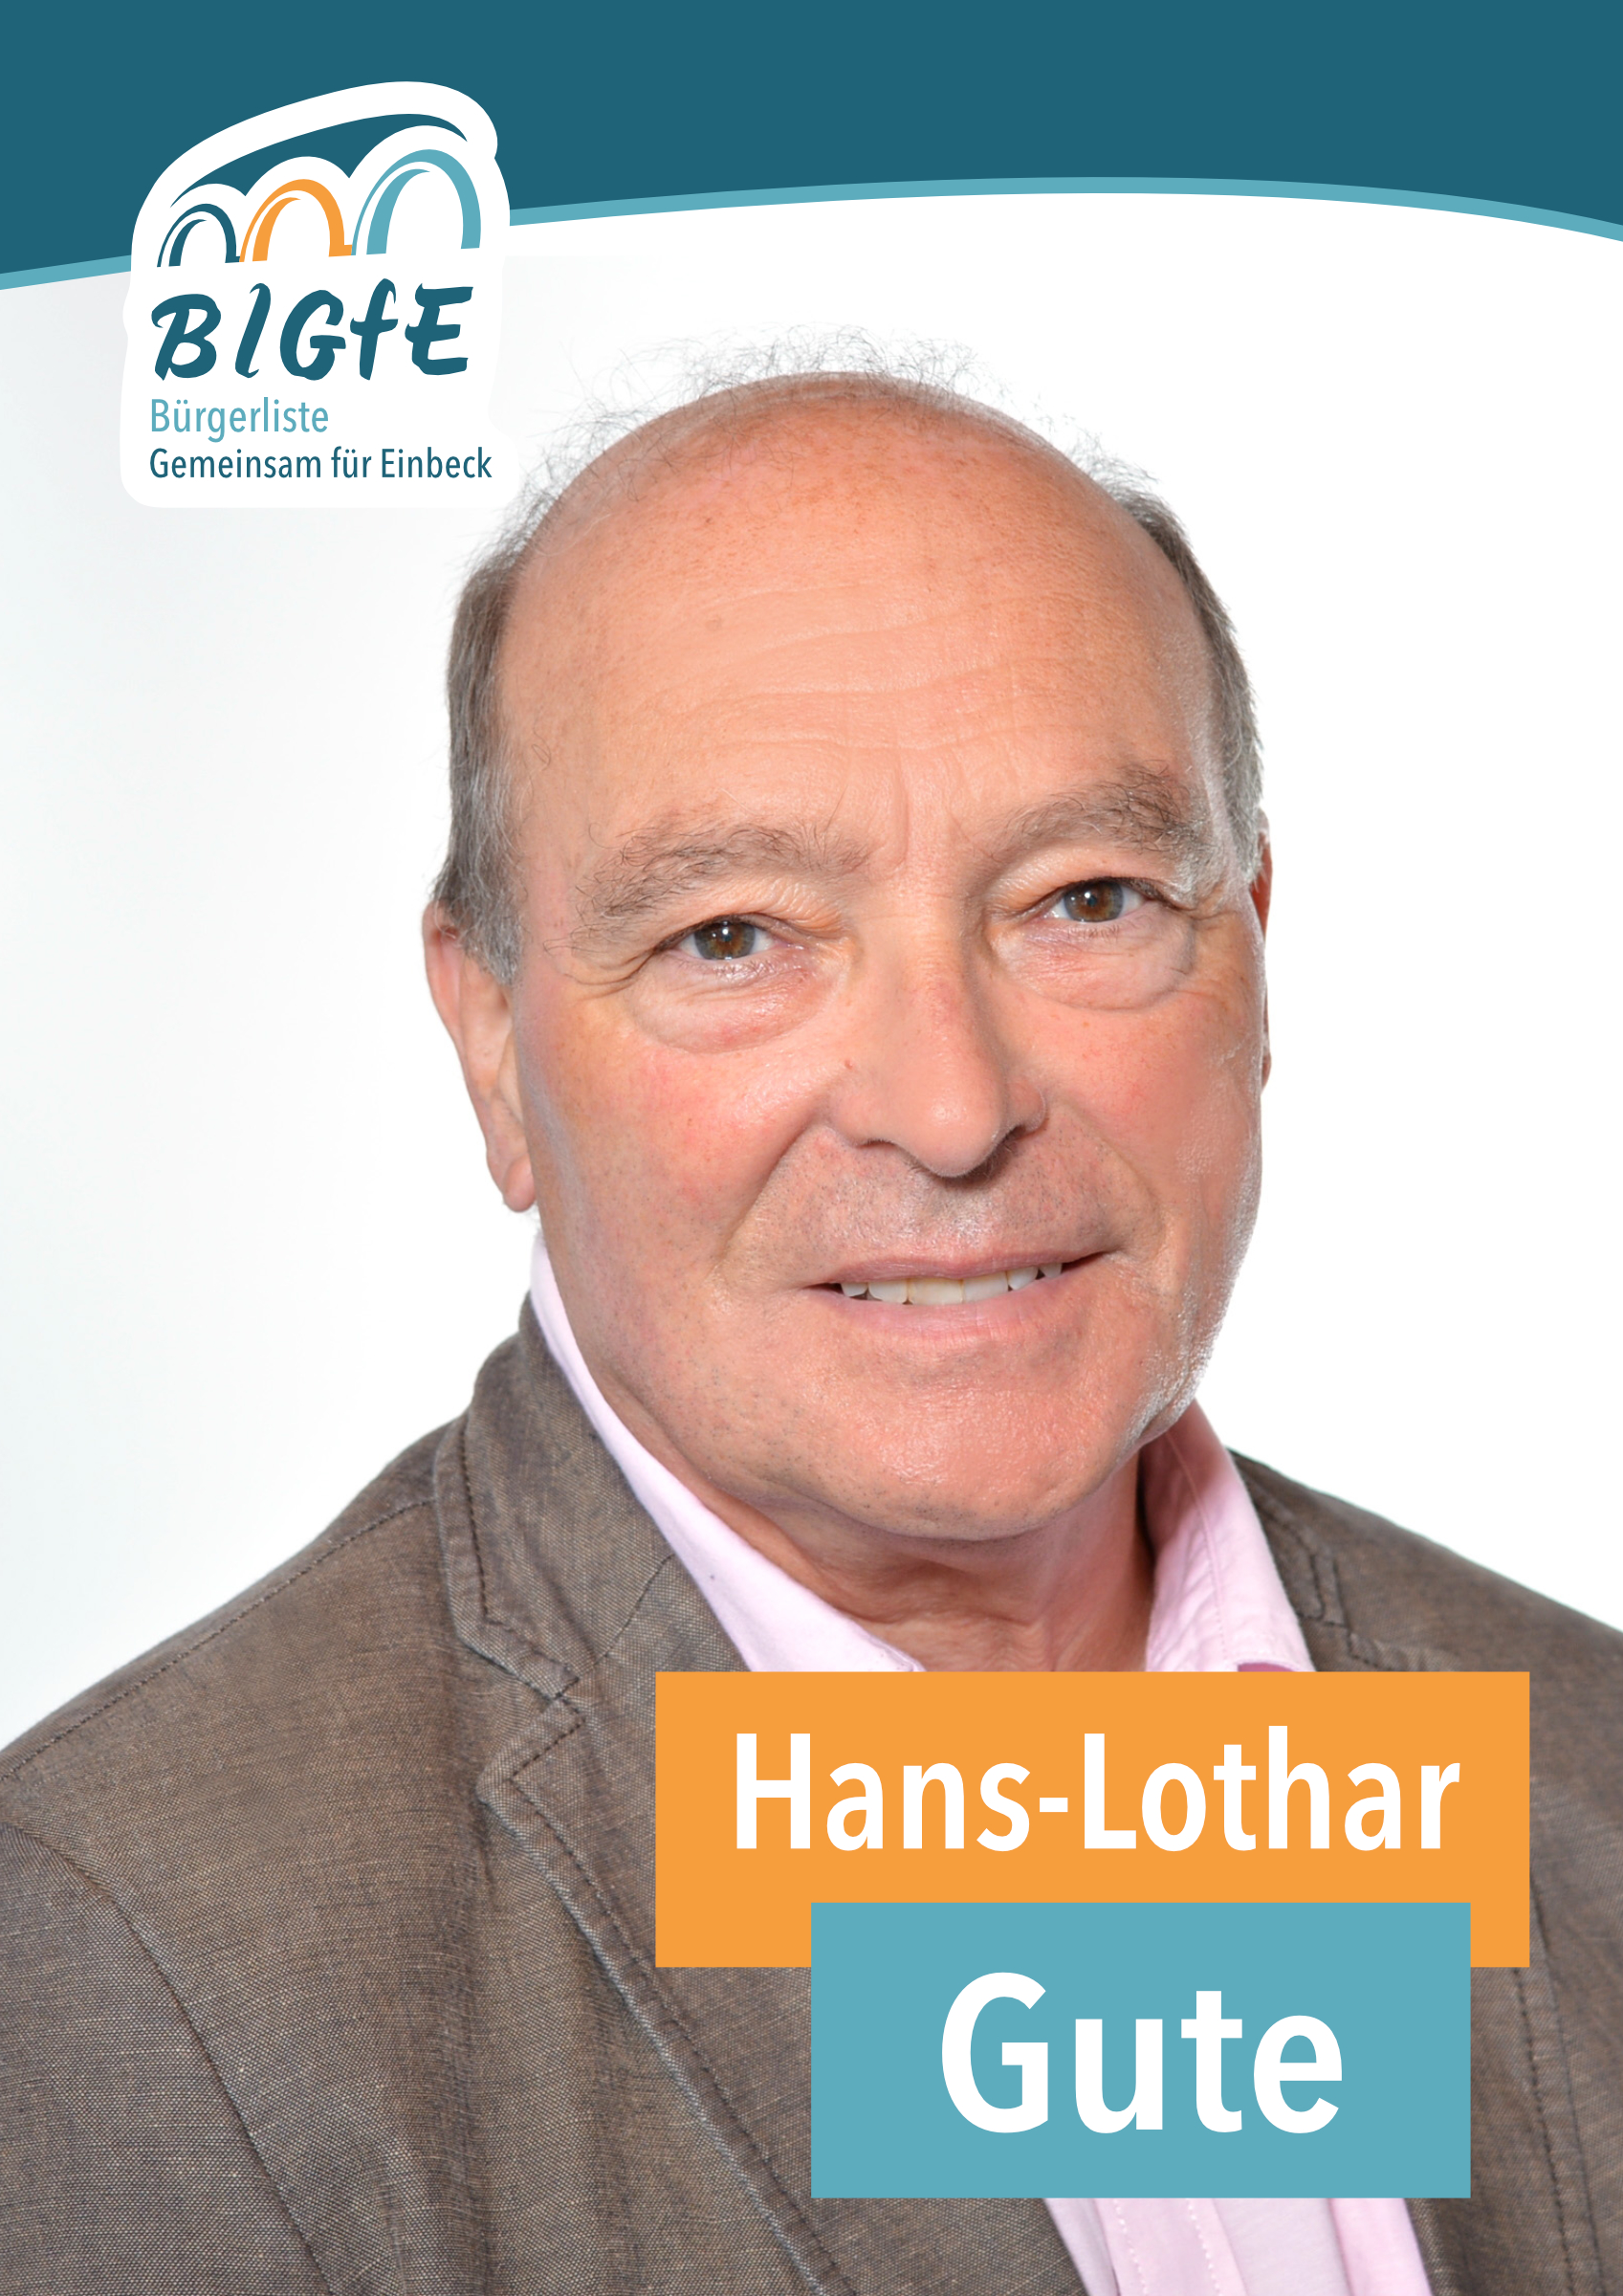 Hans-Lothar Gute